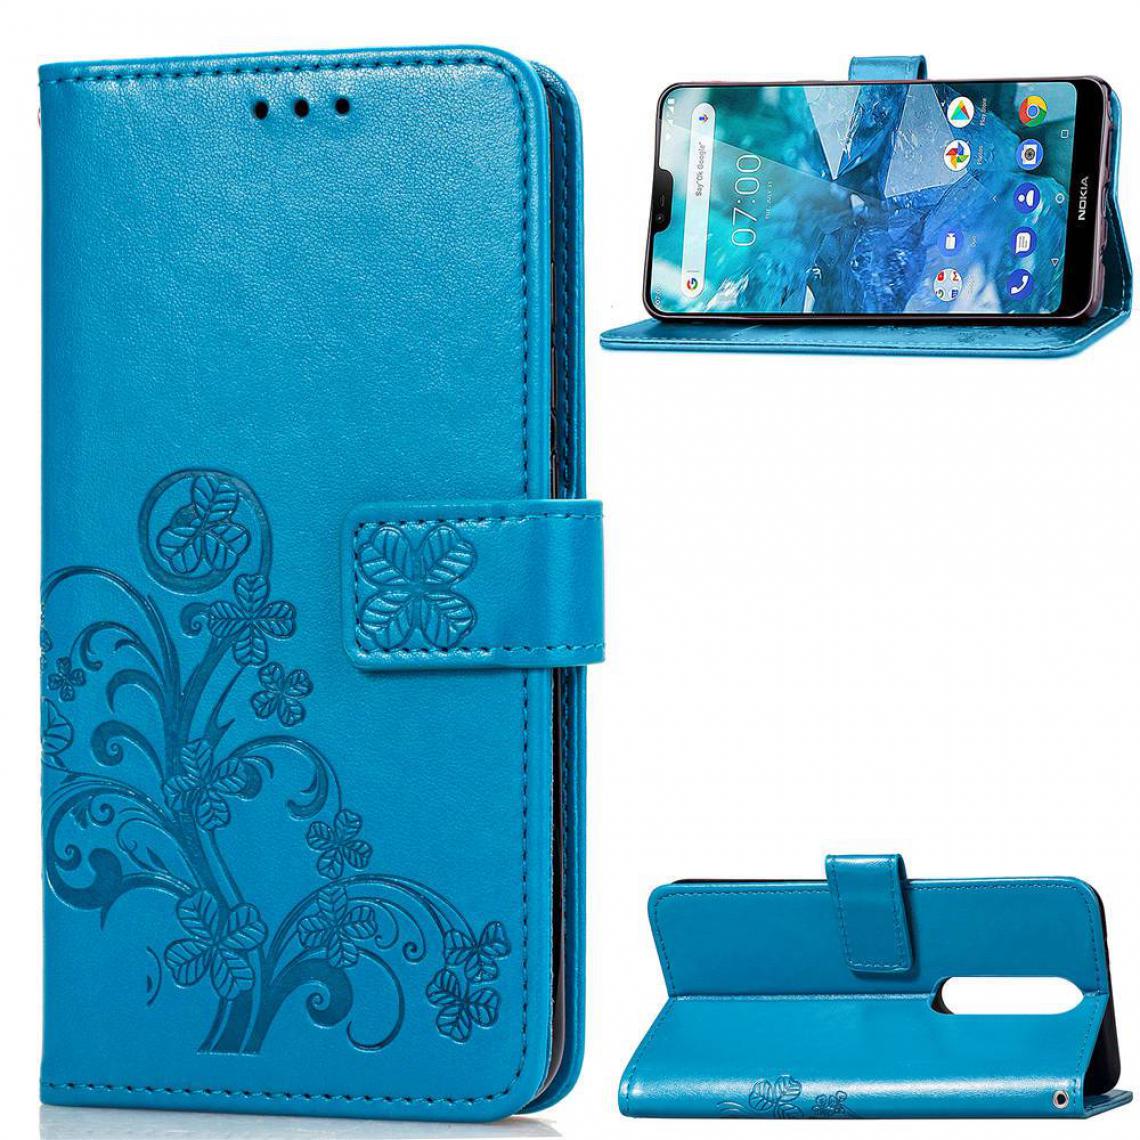 OtterBox - Nokia 7.1 Housse Etui Coque de protection type portefeuille (lys) [Bleu] - Coque, étui smartphone